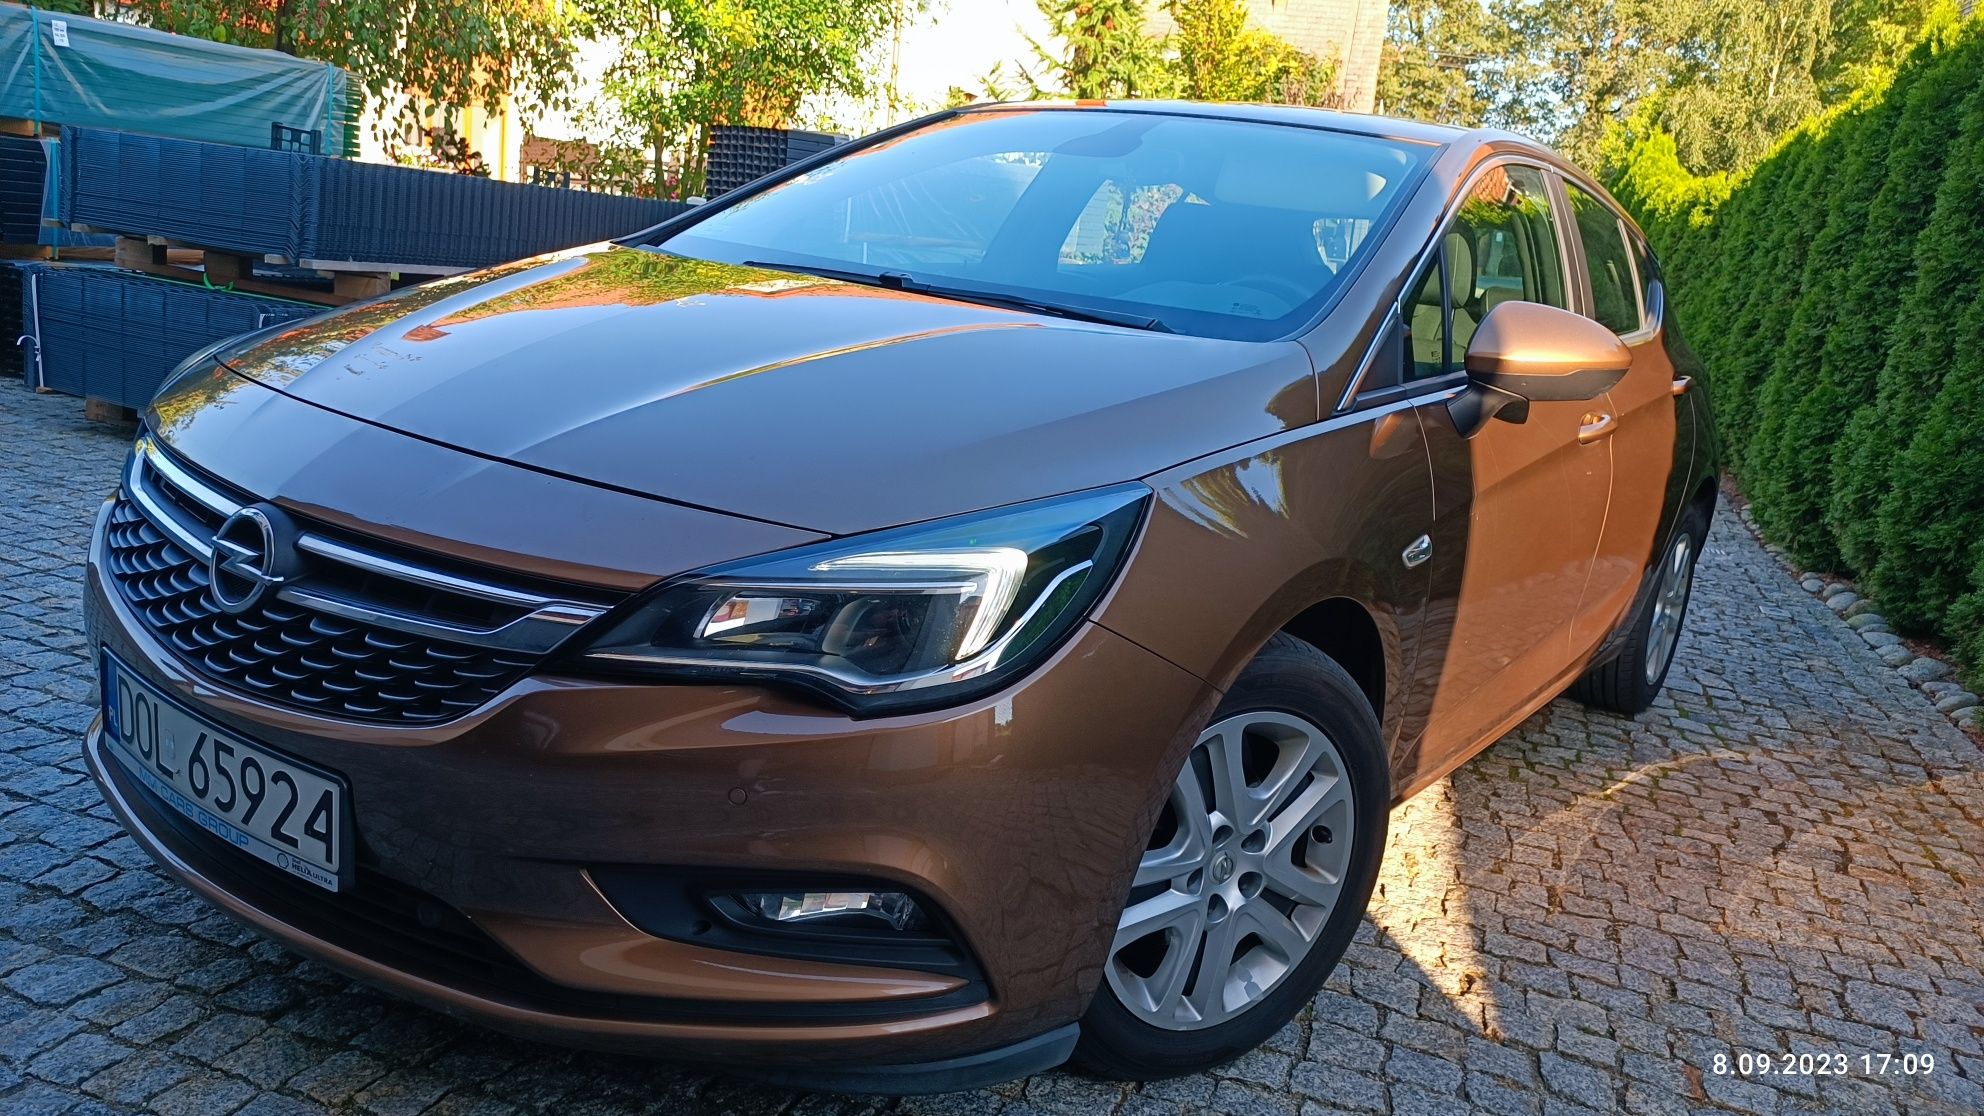 Opel astra K 1.4 turbo